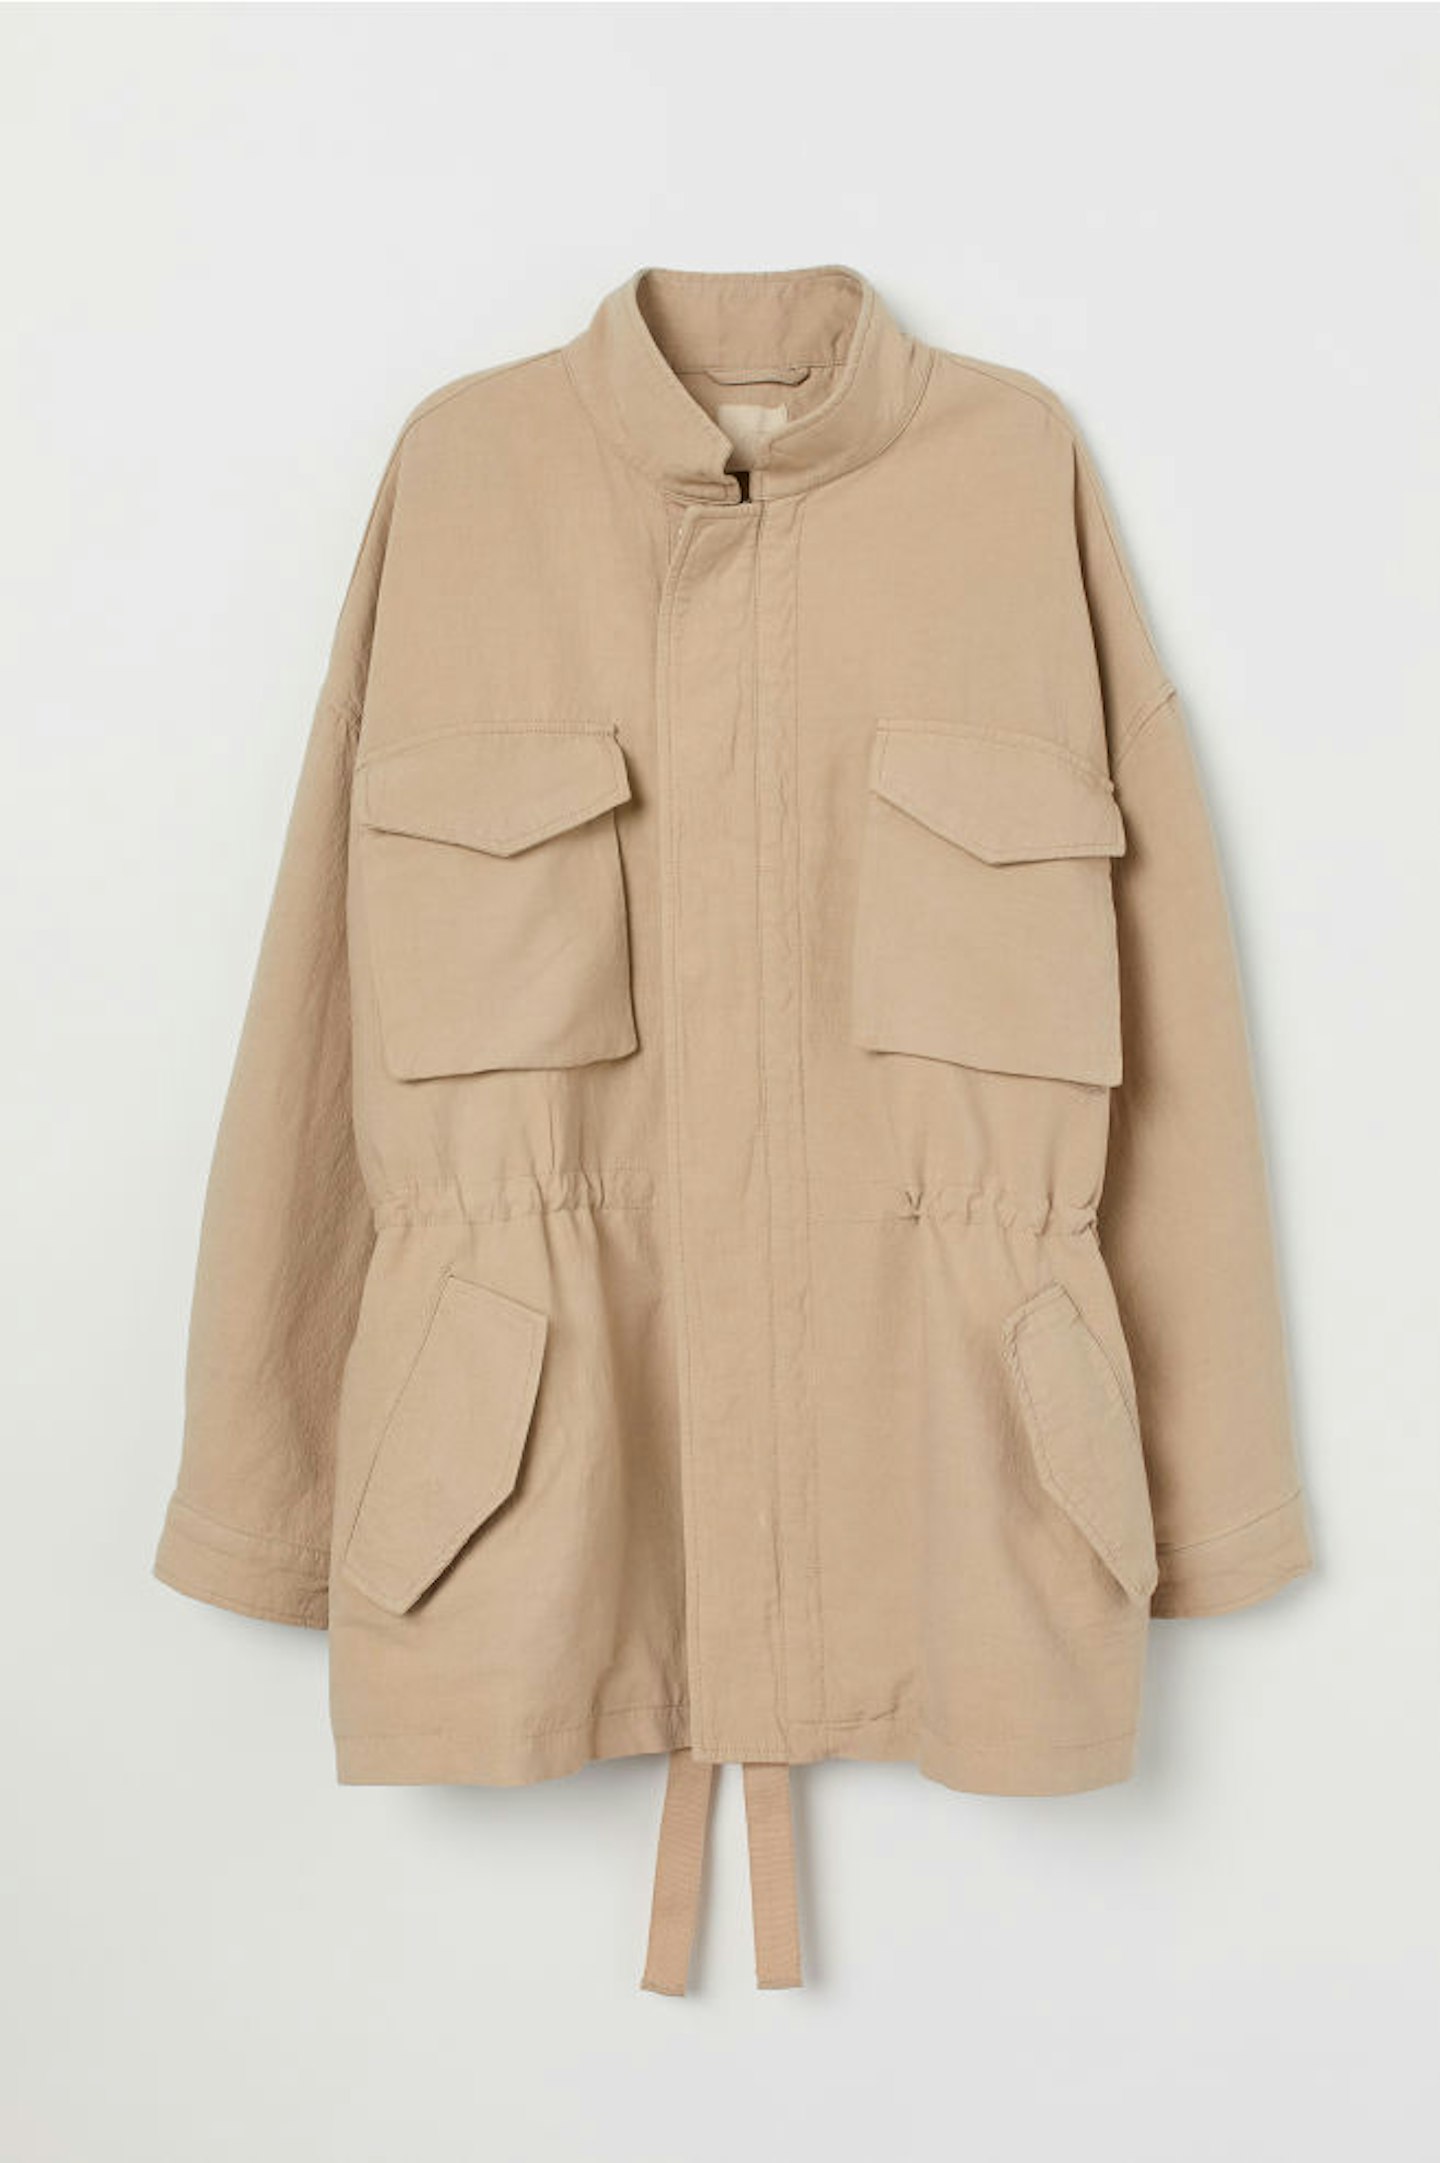 H&M, Oversized Utility Jacket, £49.99